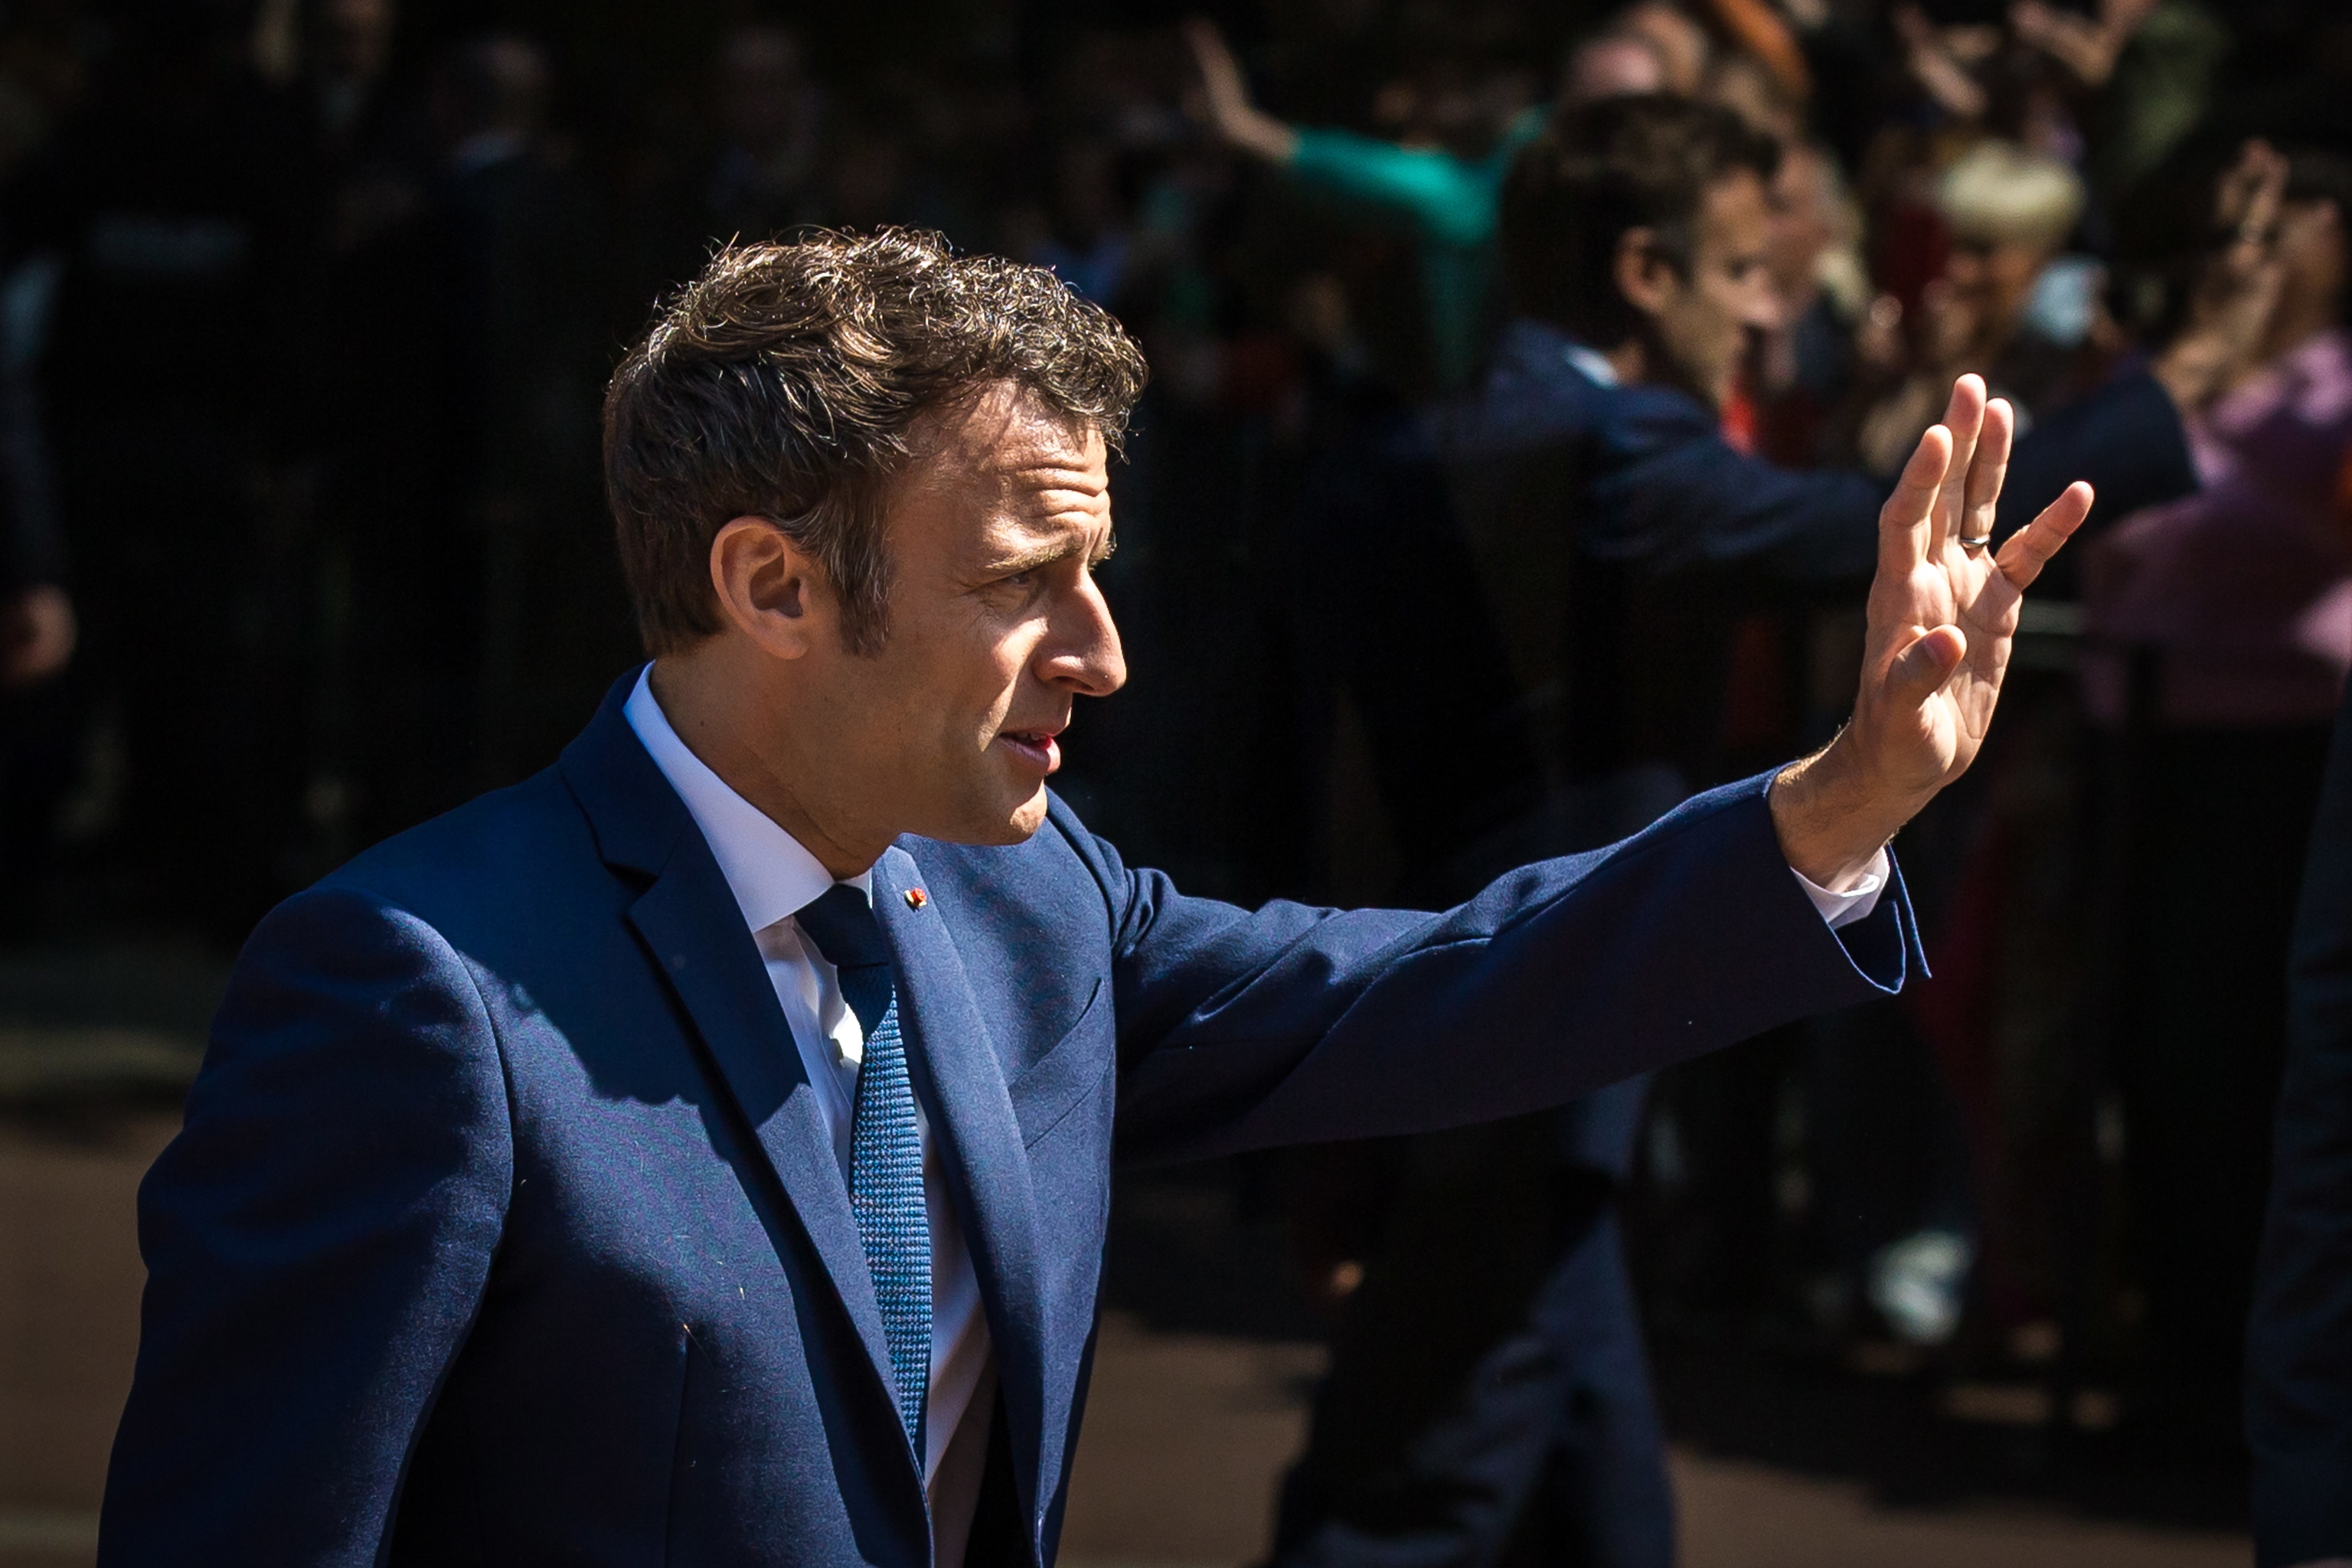 Las legislativas, la última batalla de Macron: fechas clave del calendario político en Francia